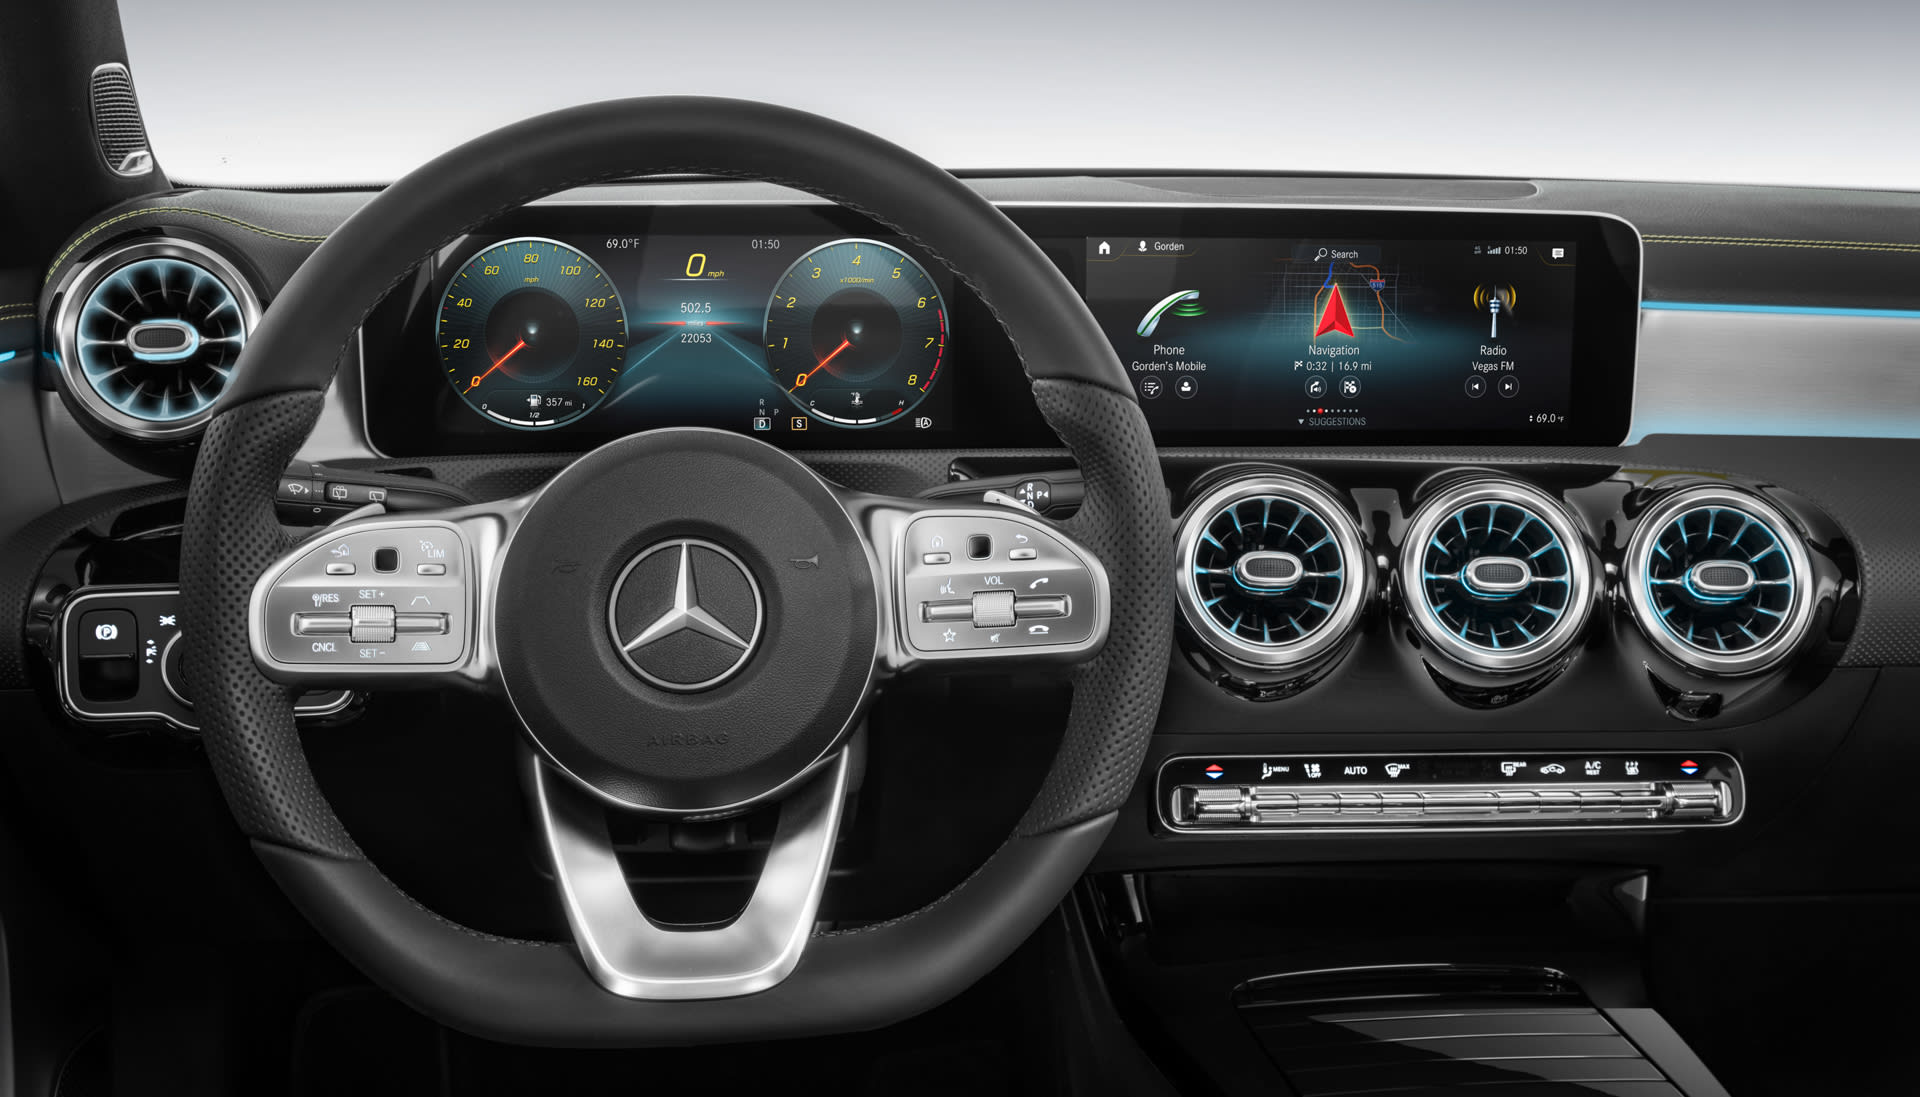 Mercedes-Benz A-Class A220 review